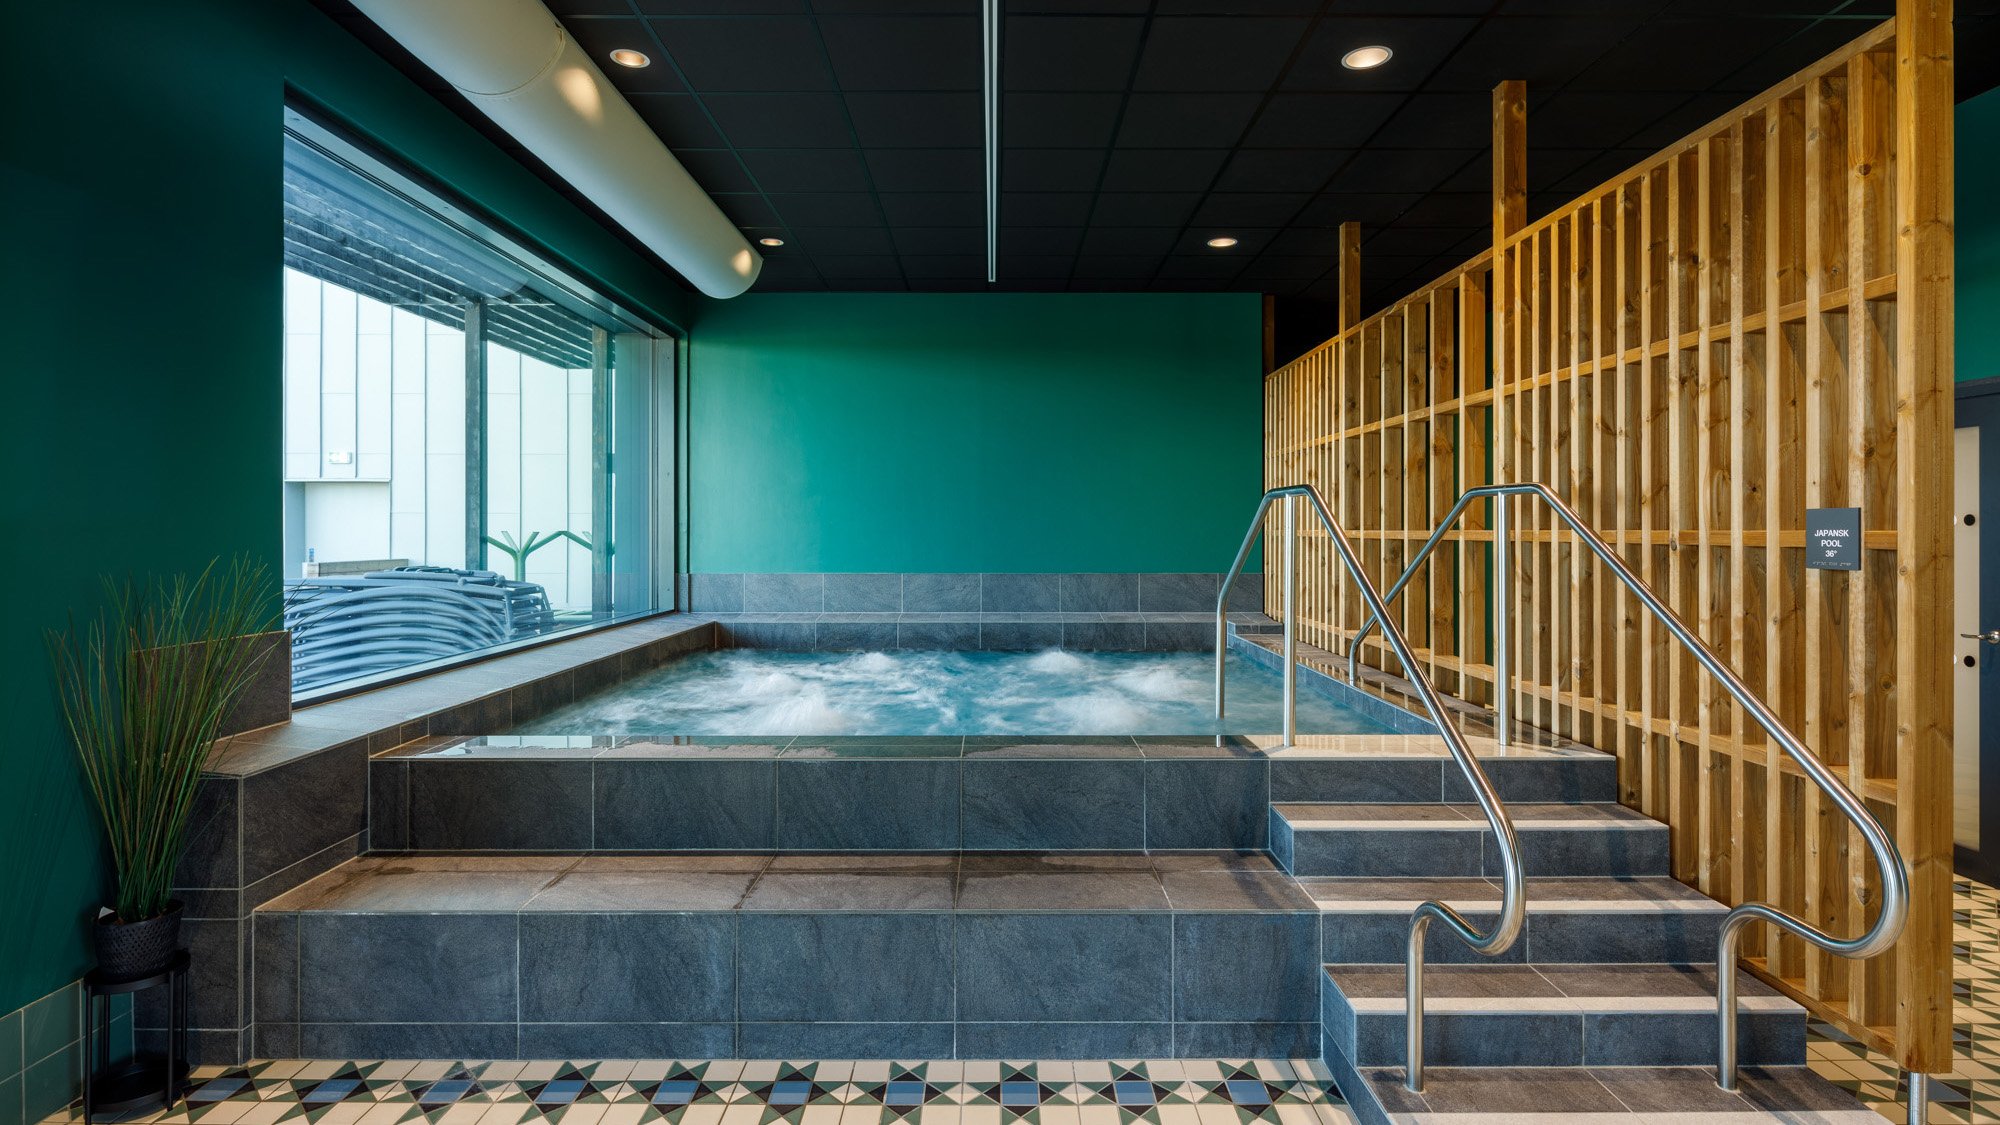 Japanska badet i Harjagersbadet fotograferat interiört med fokus på bubbelpoolen